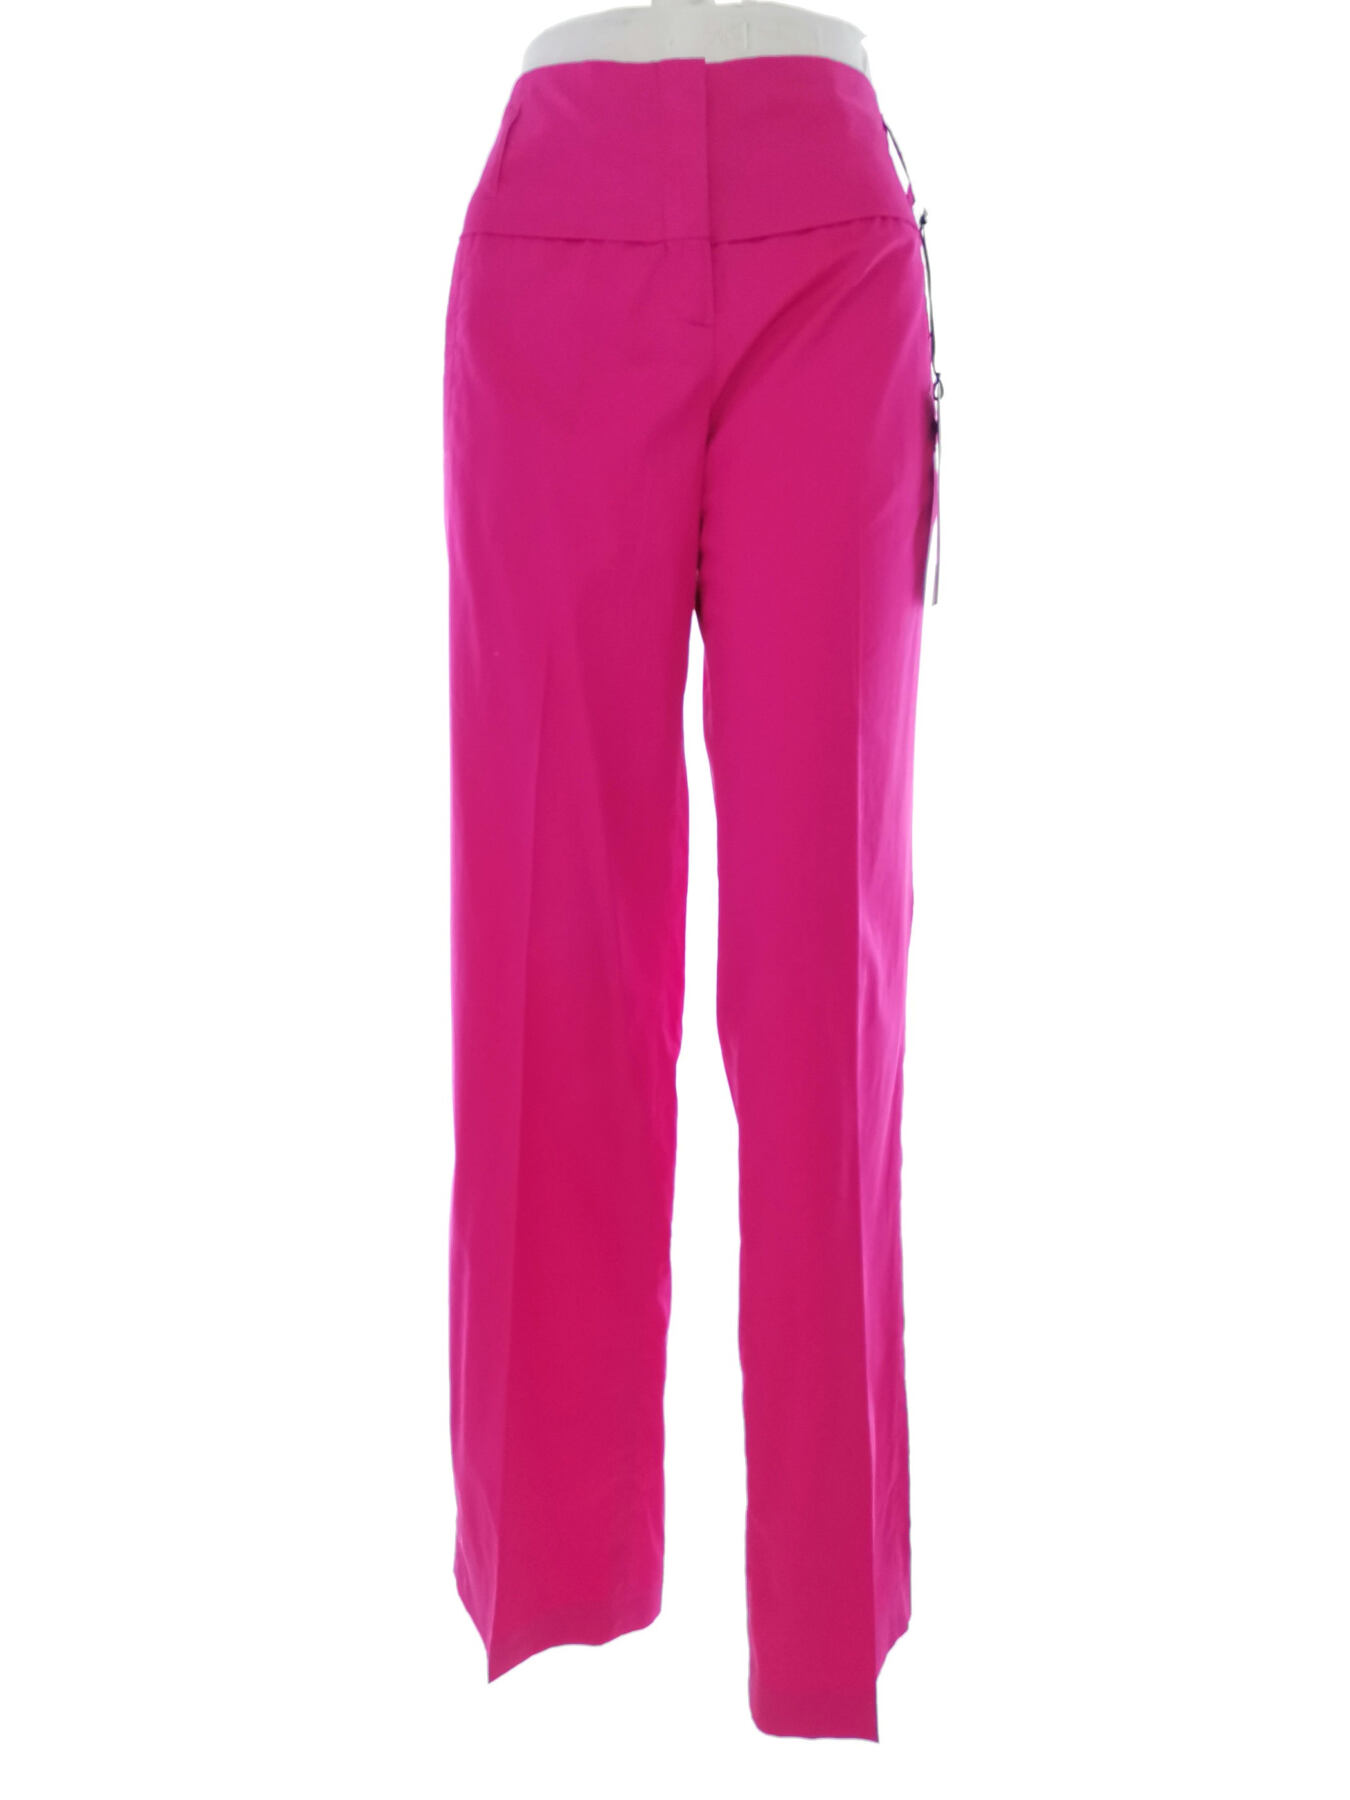 BANDOLERA Rozmiar 38 Kolor Różowy Spodnie Eleganckie Materiał Bawełna 100%